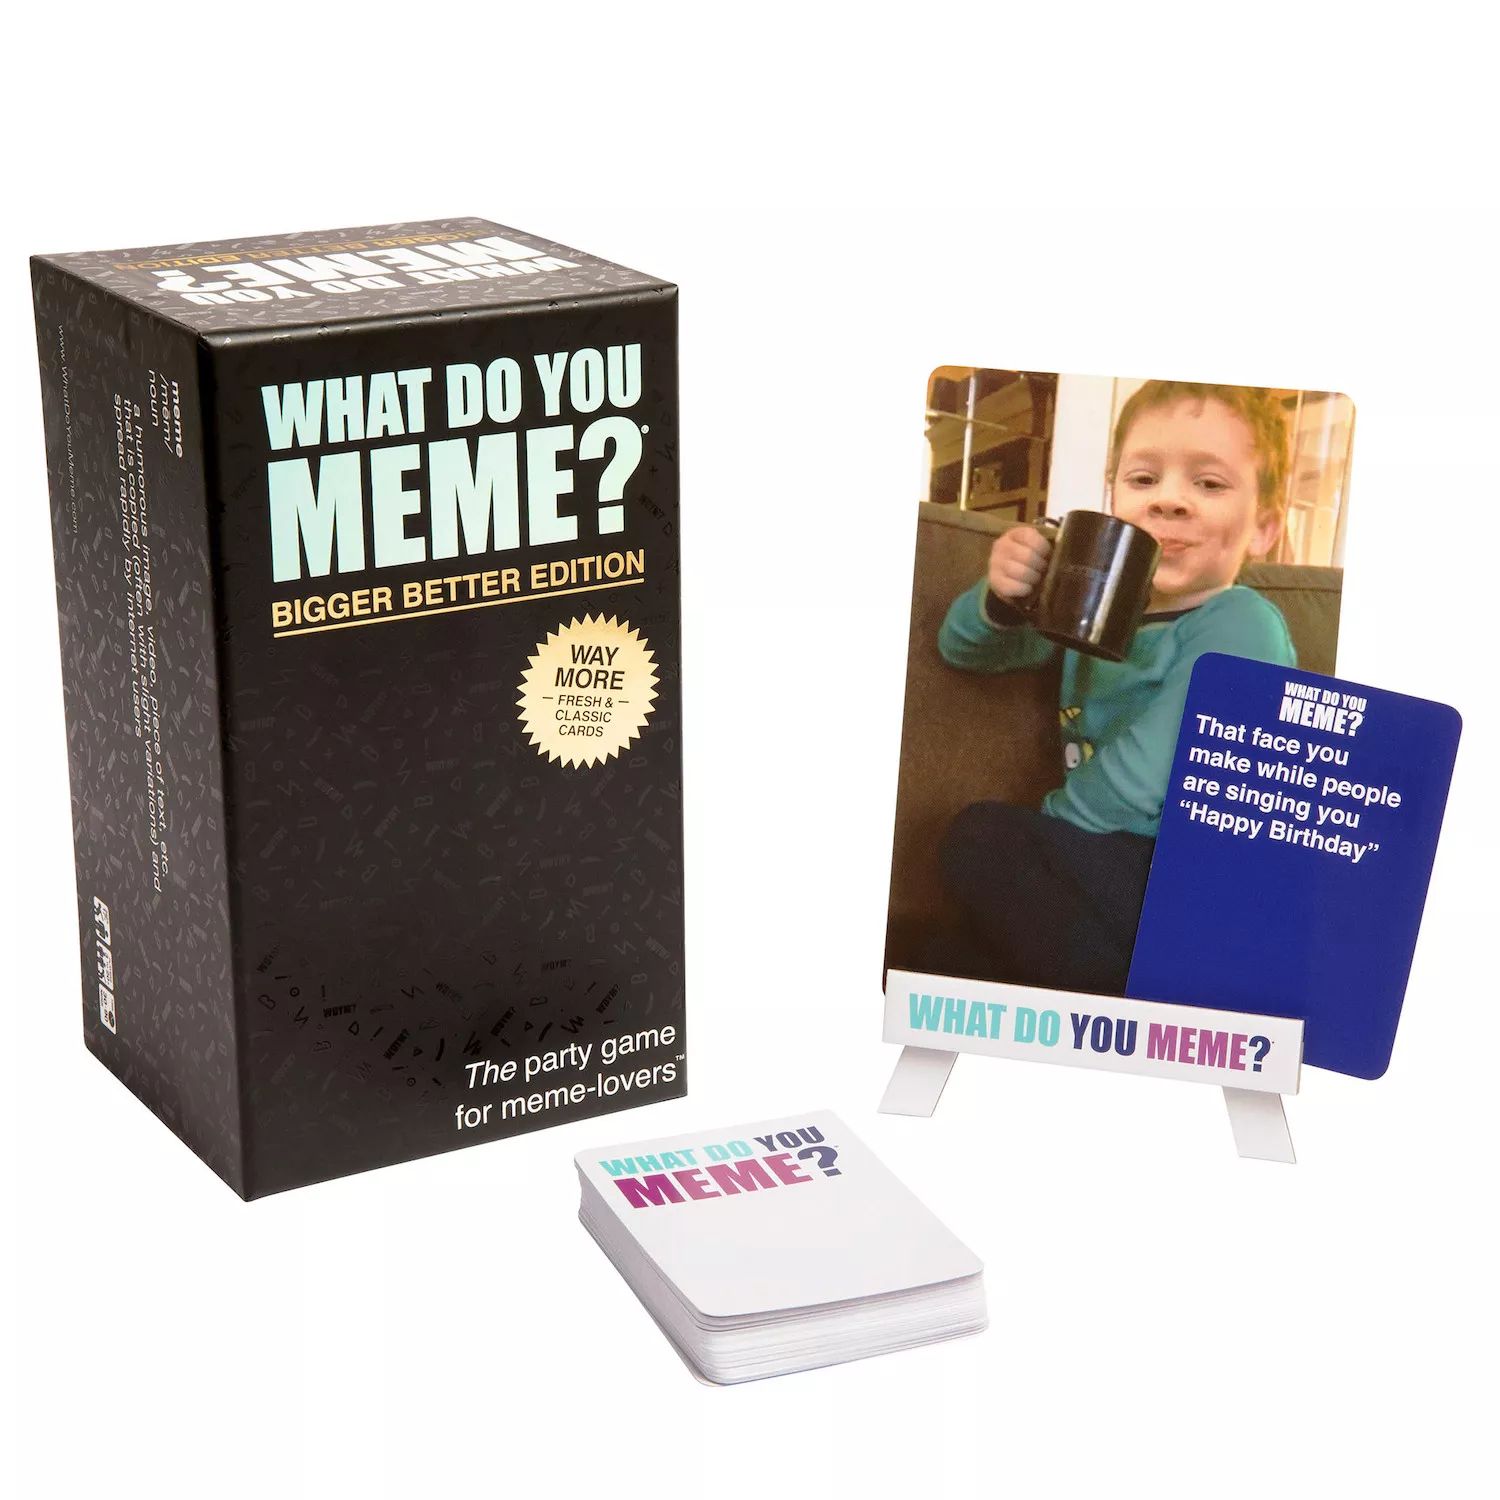 новый телефон who dis семейное издание от what do you meme what do you meme Что ты мем? Core Game — веселая игра для вечеринок для взрослых для любителей мемов (Bigger Better Edition) What Do You Meme?